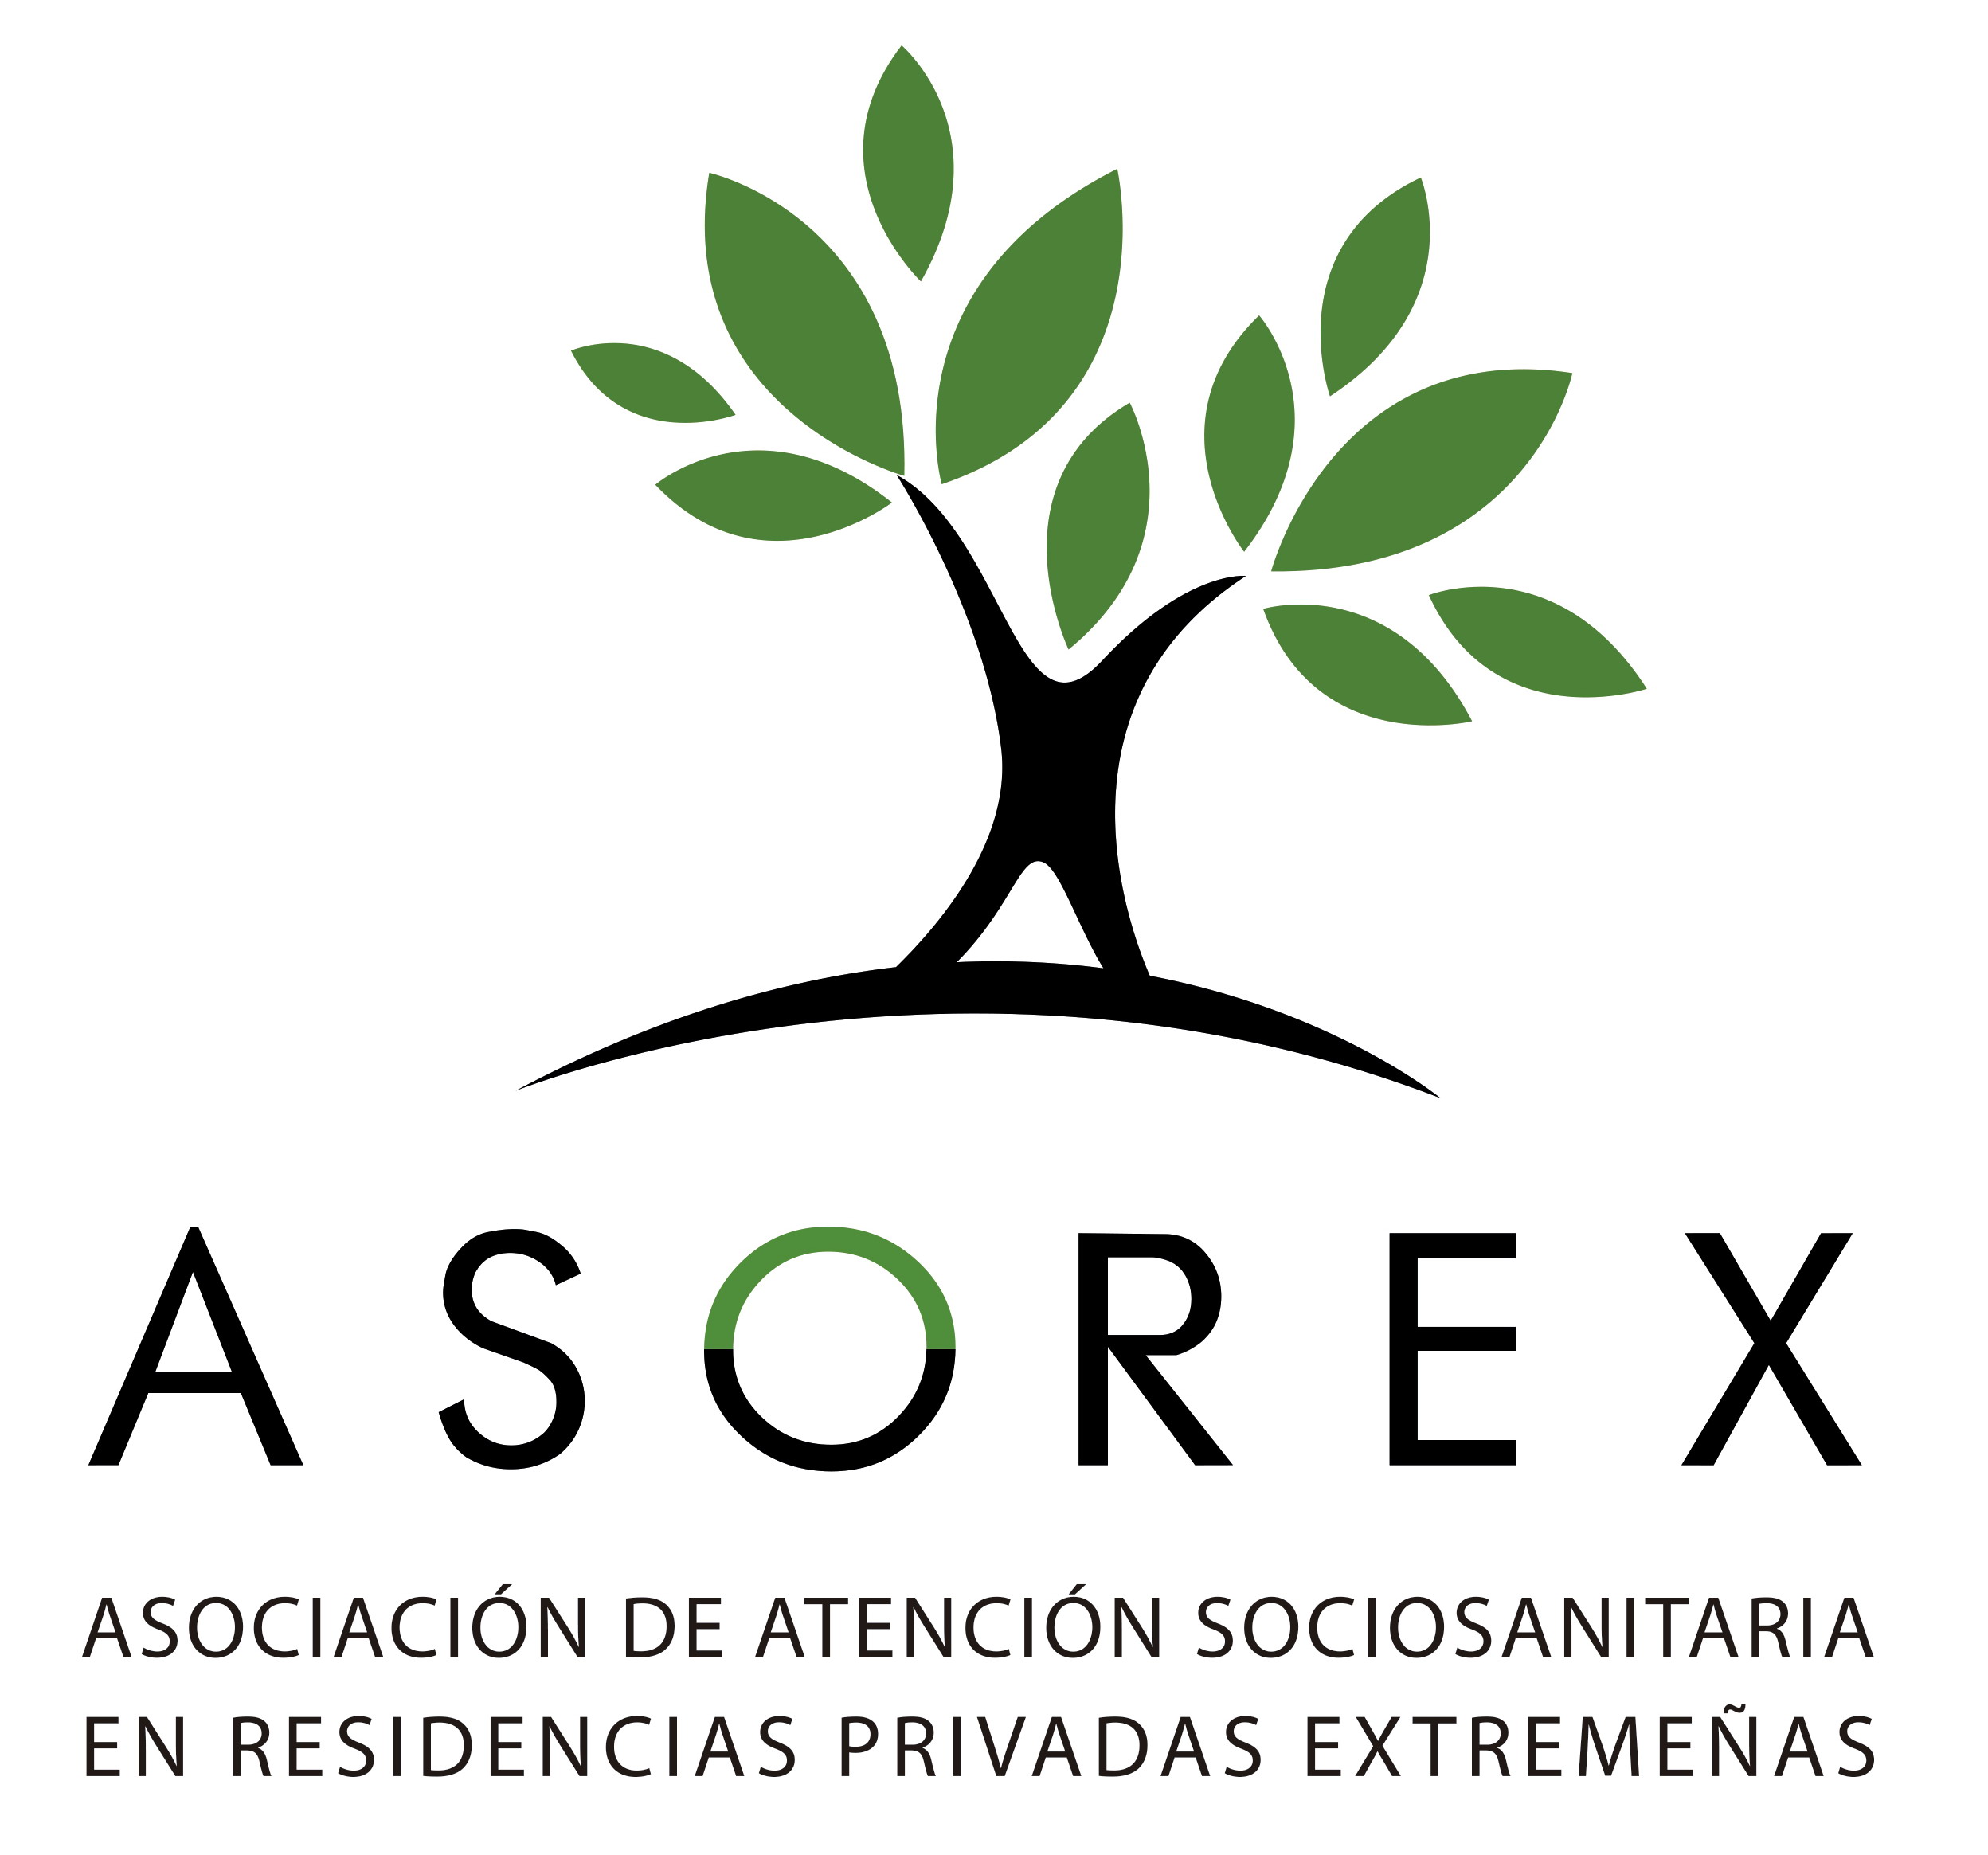 Asociación de Atención Sociosanitaria en Residencias Privadas Extremeñas (ASOREX)